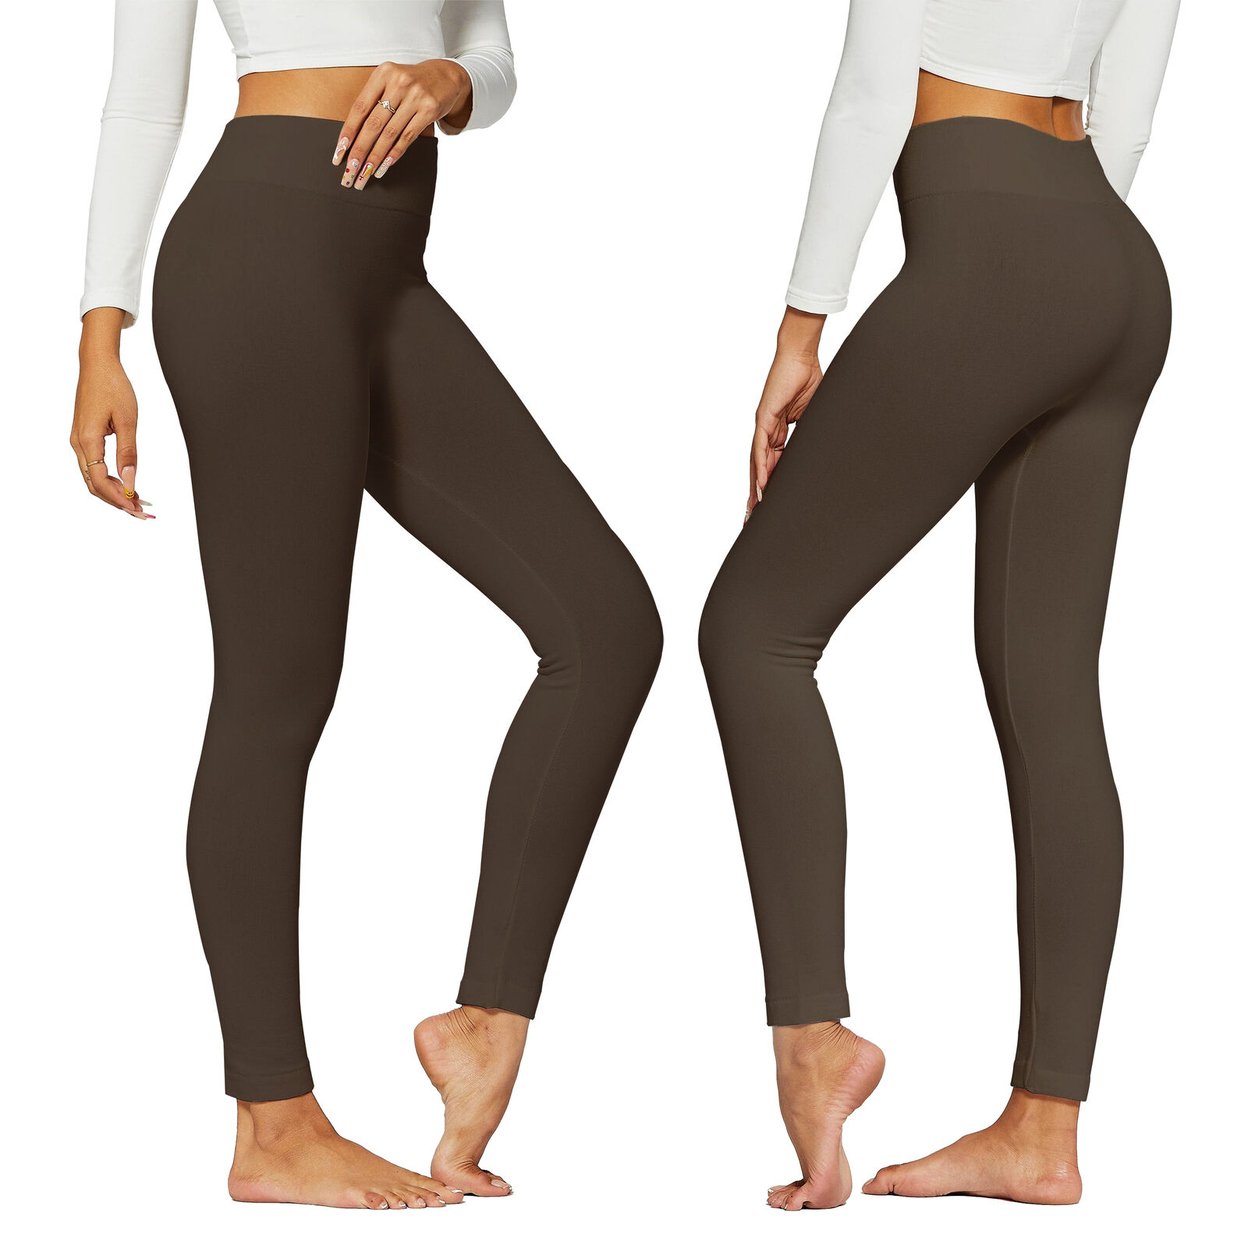 2-Pack: Women's Winter Warm High-Waist Soft Fleece Lined Leggings - Black & Brown, 2X